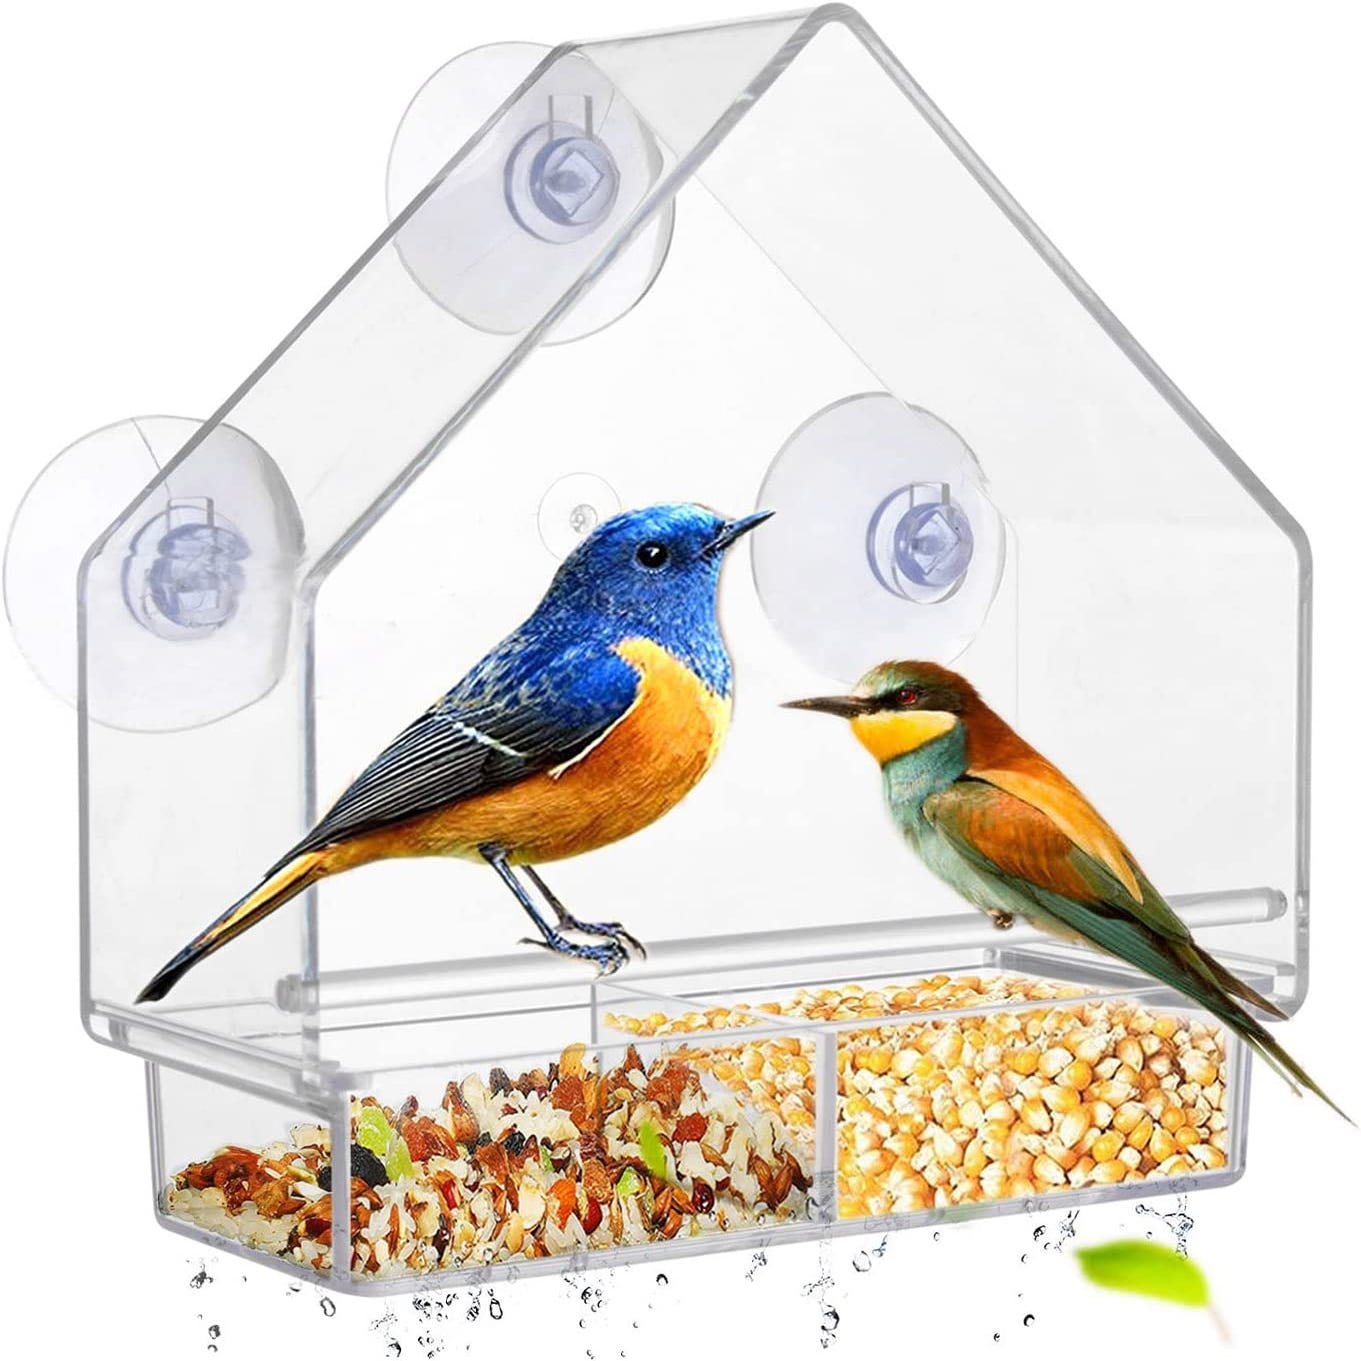 Mangeoire pour oiseaux avec ventouse